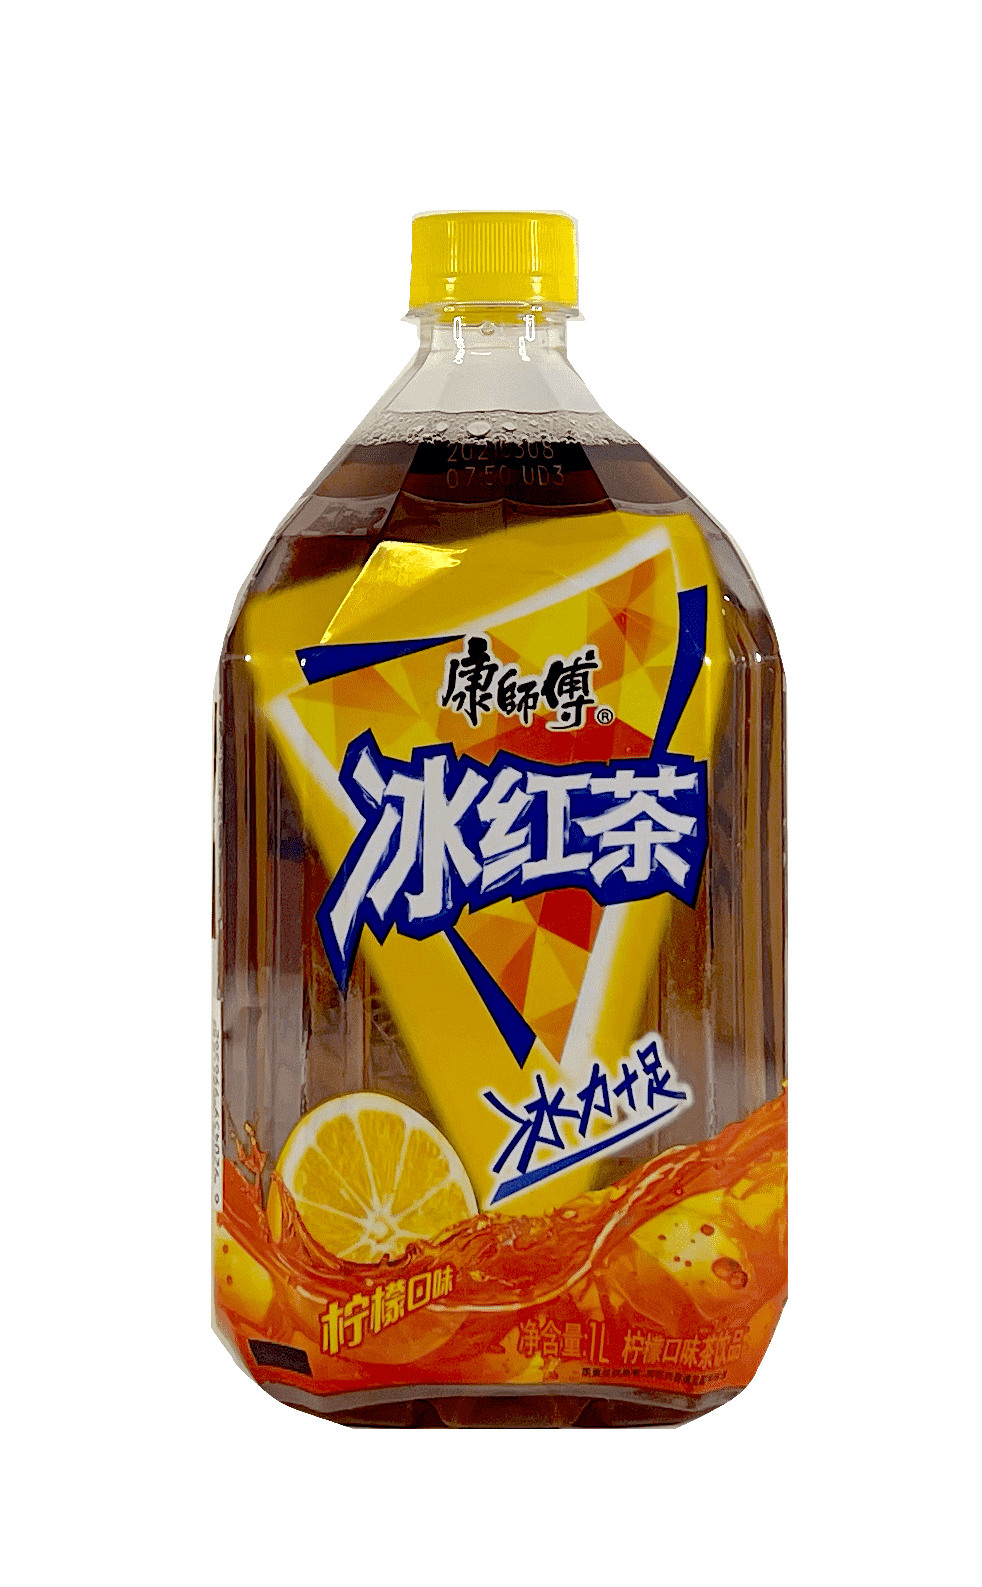 Drink Ice Tea 1000ml KSF China